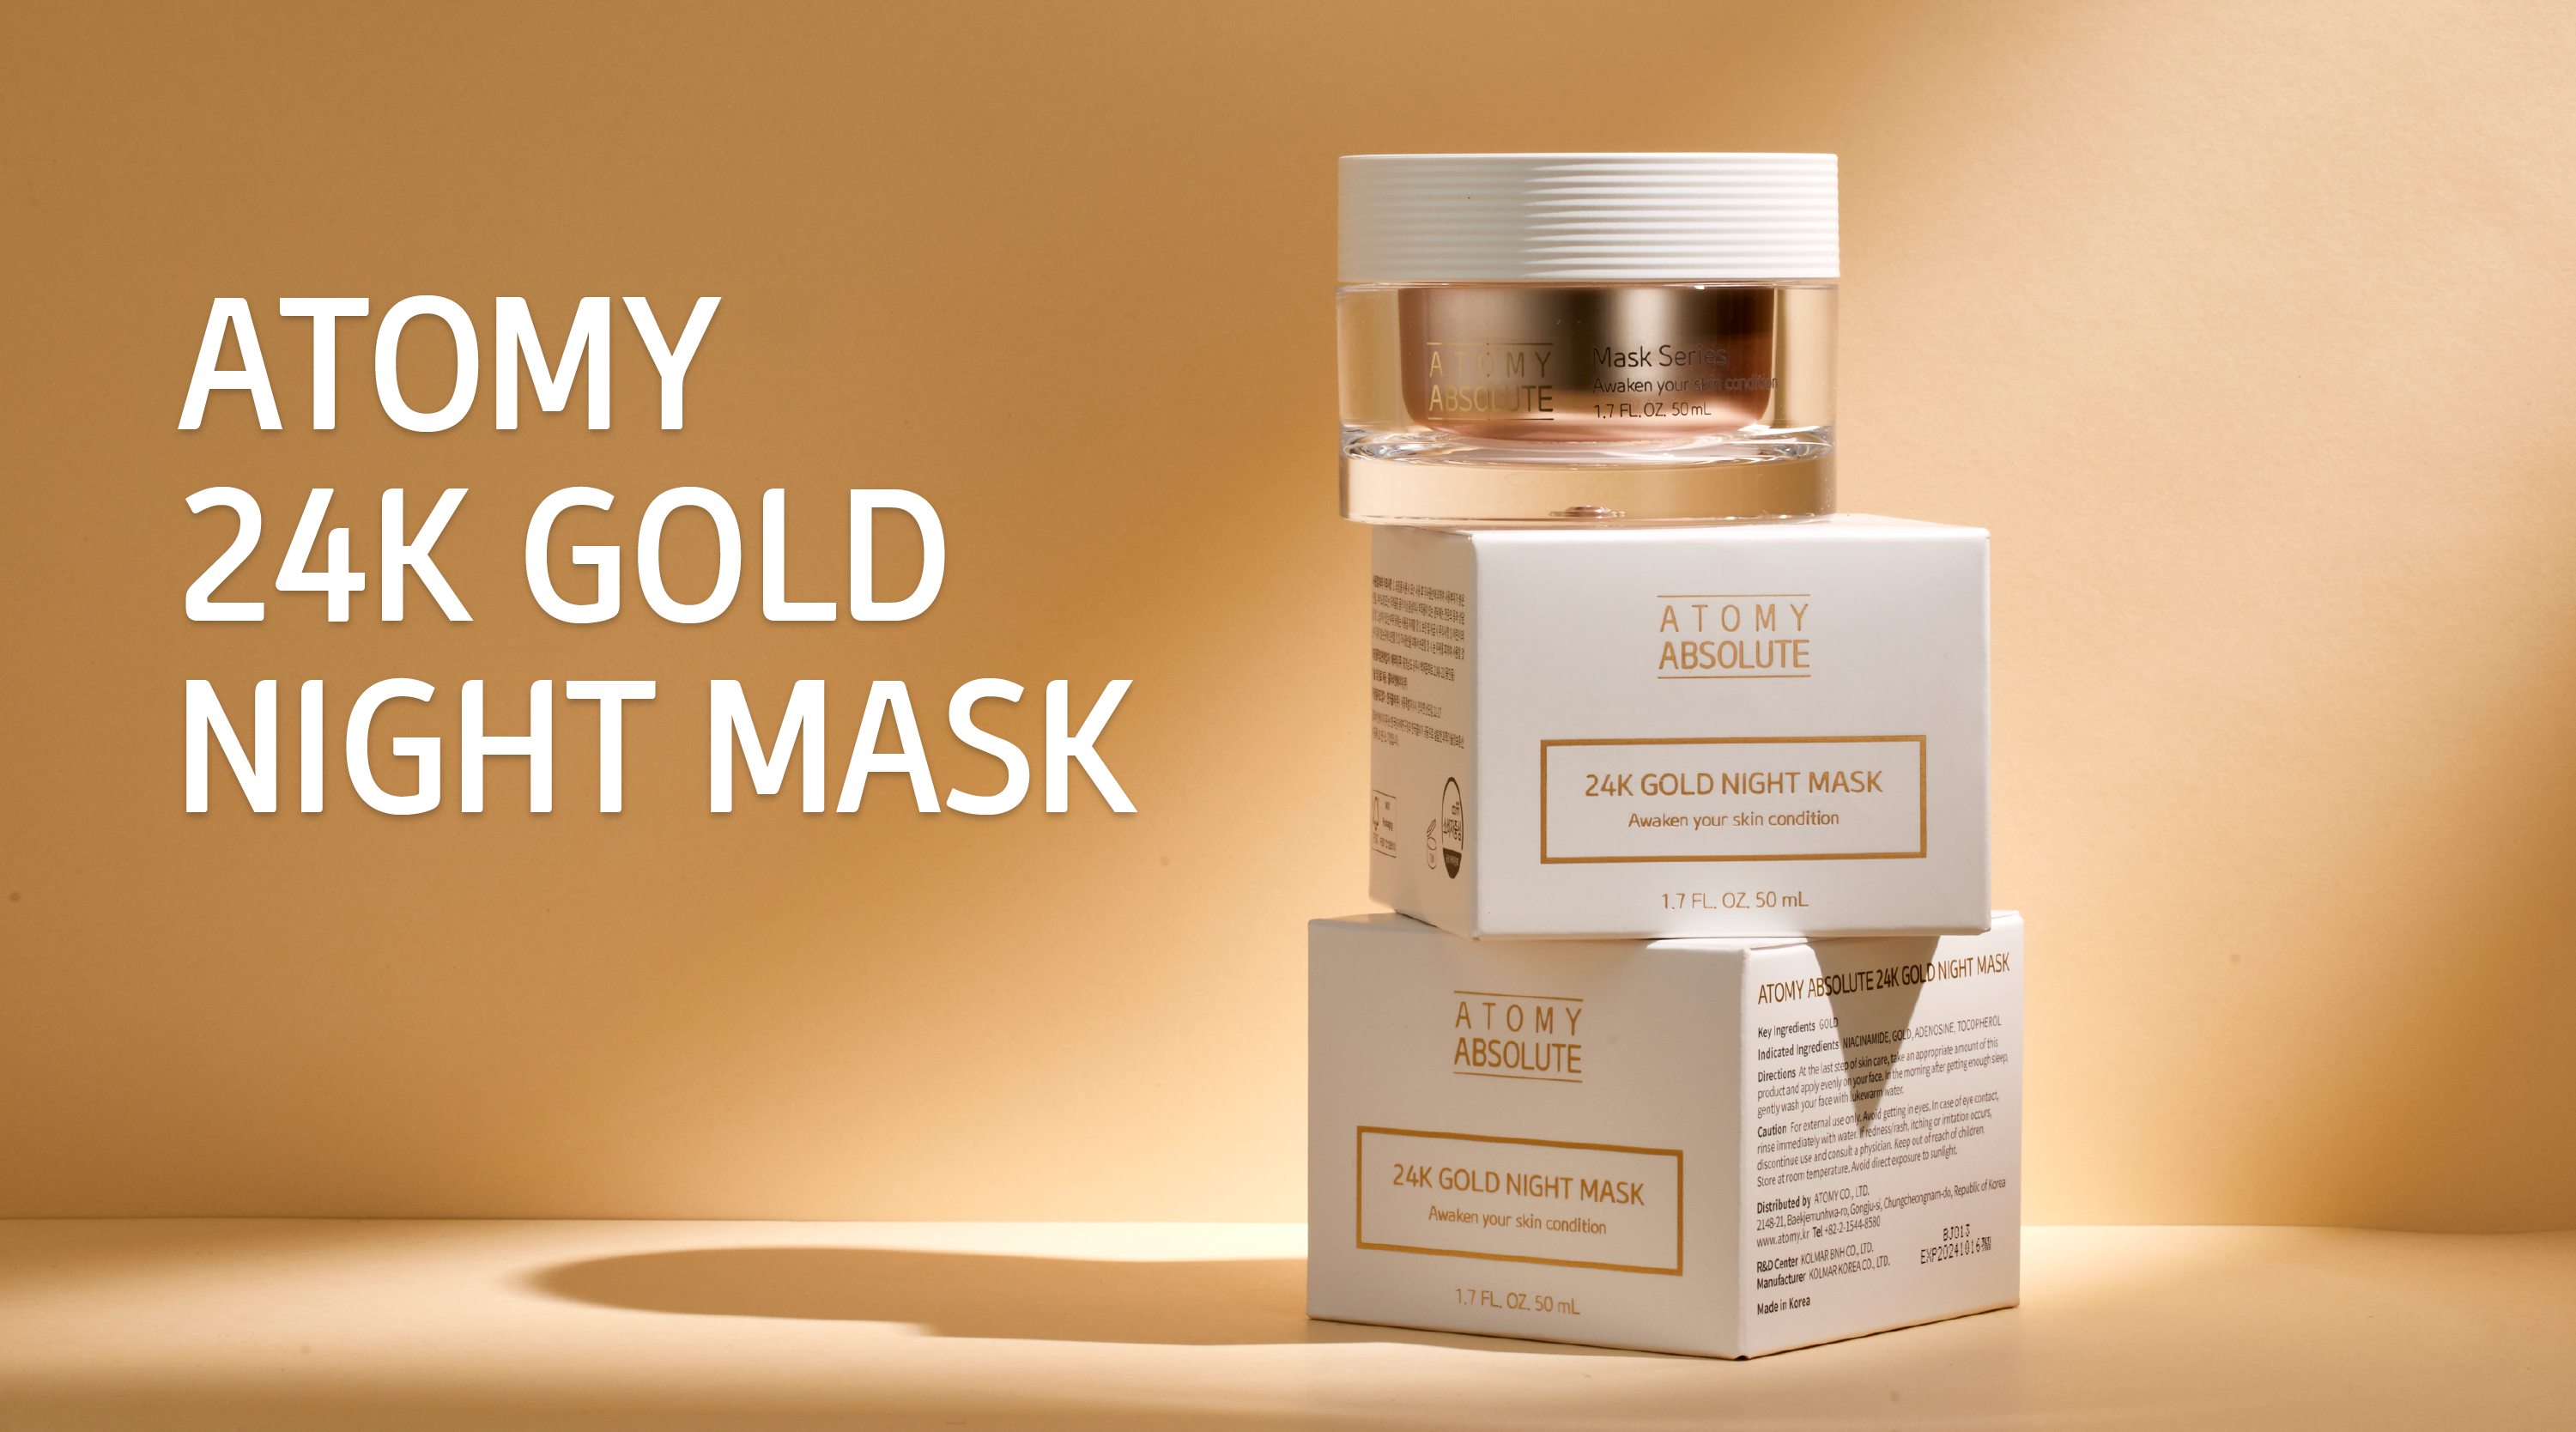 Atomy 24K Gold Night Mask